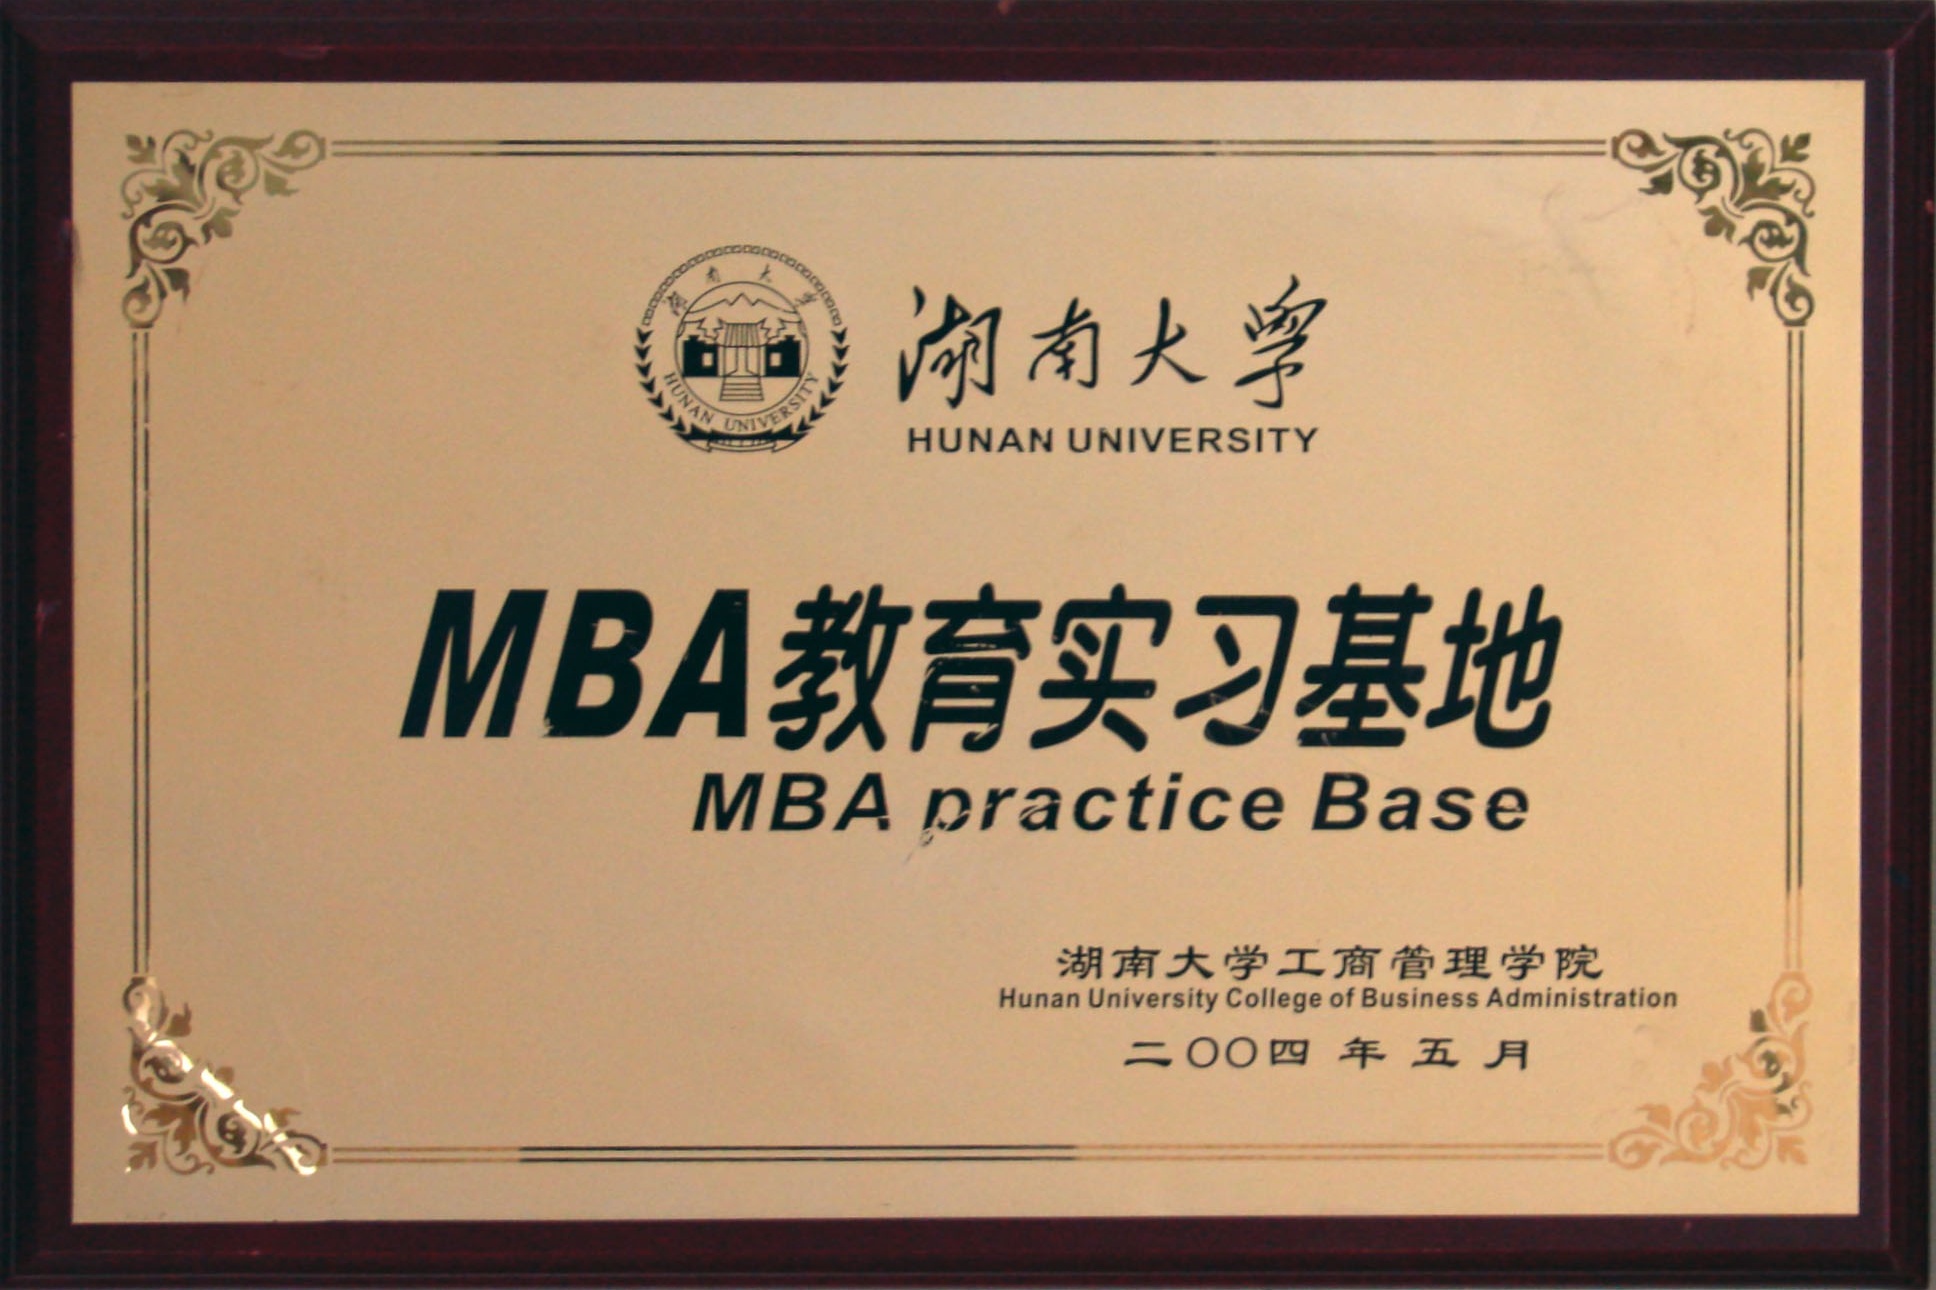 湖南大学MBA教育实习基地